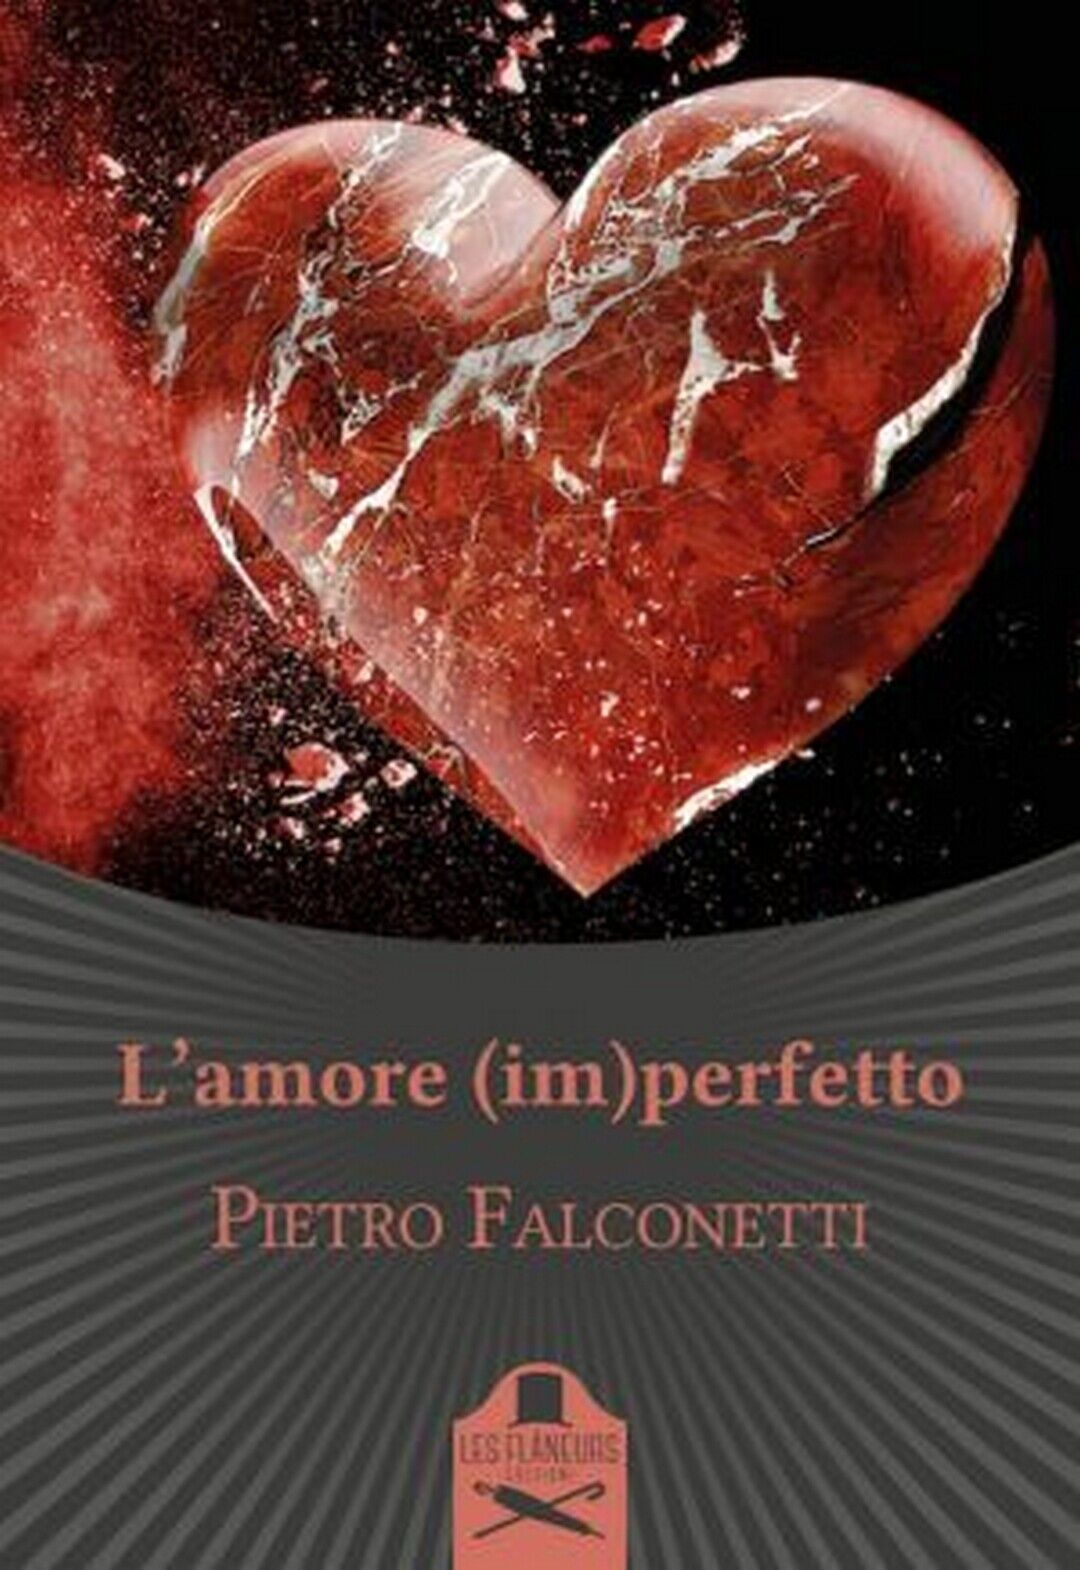 L'amore (im)perfetto  di Pietro Falconetti ,  2020,  Les Flaneurs